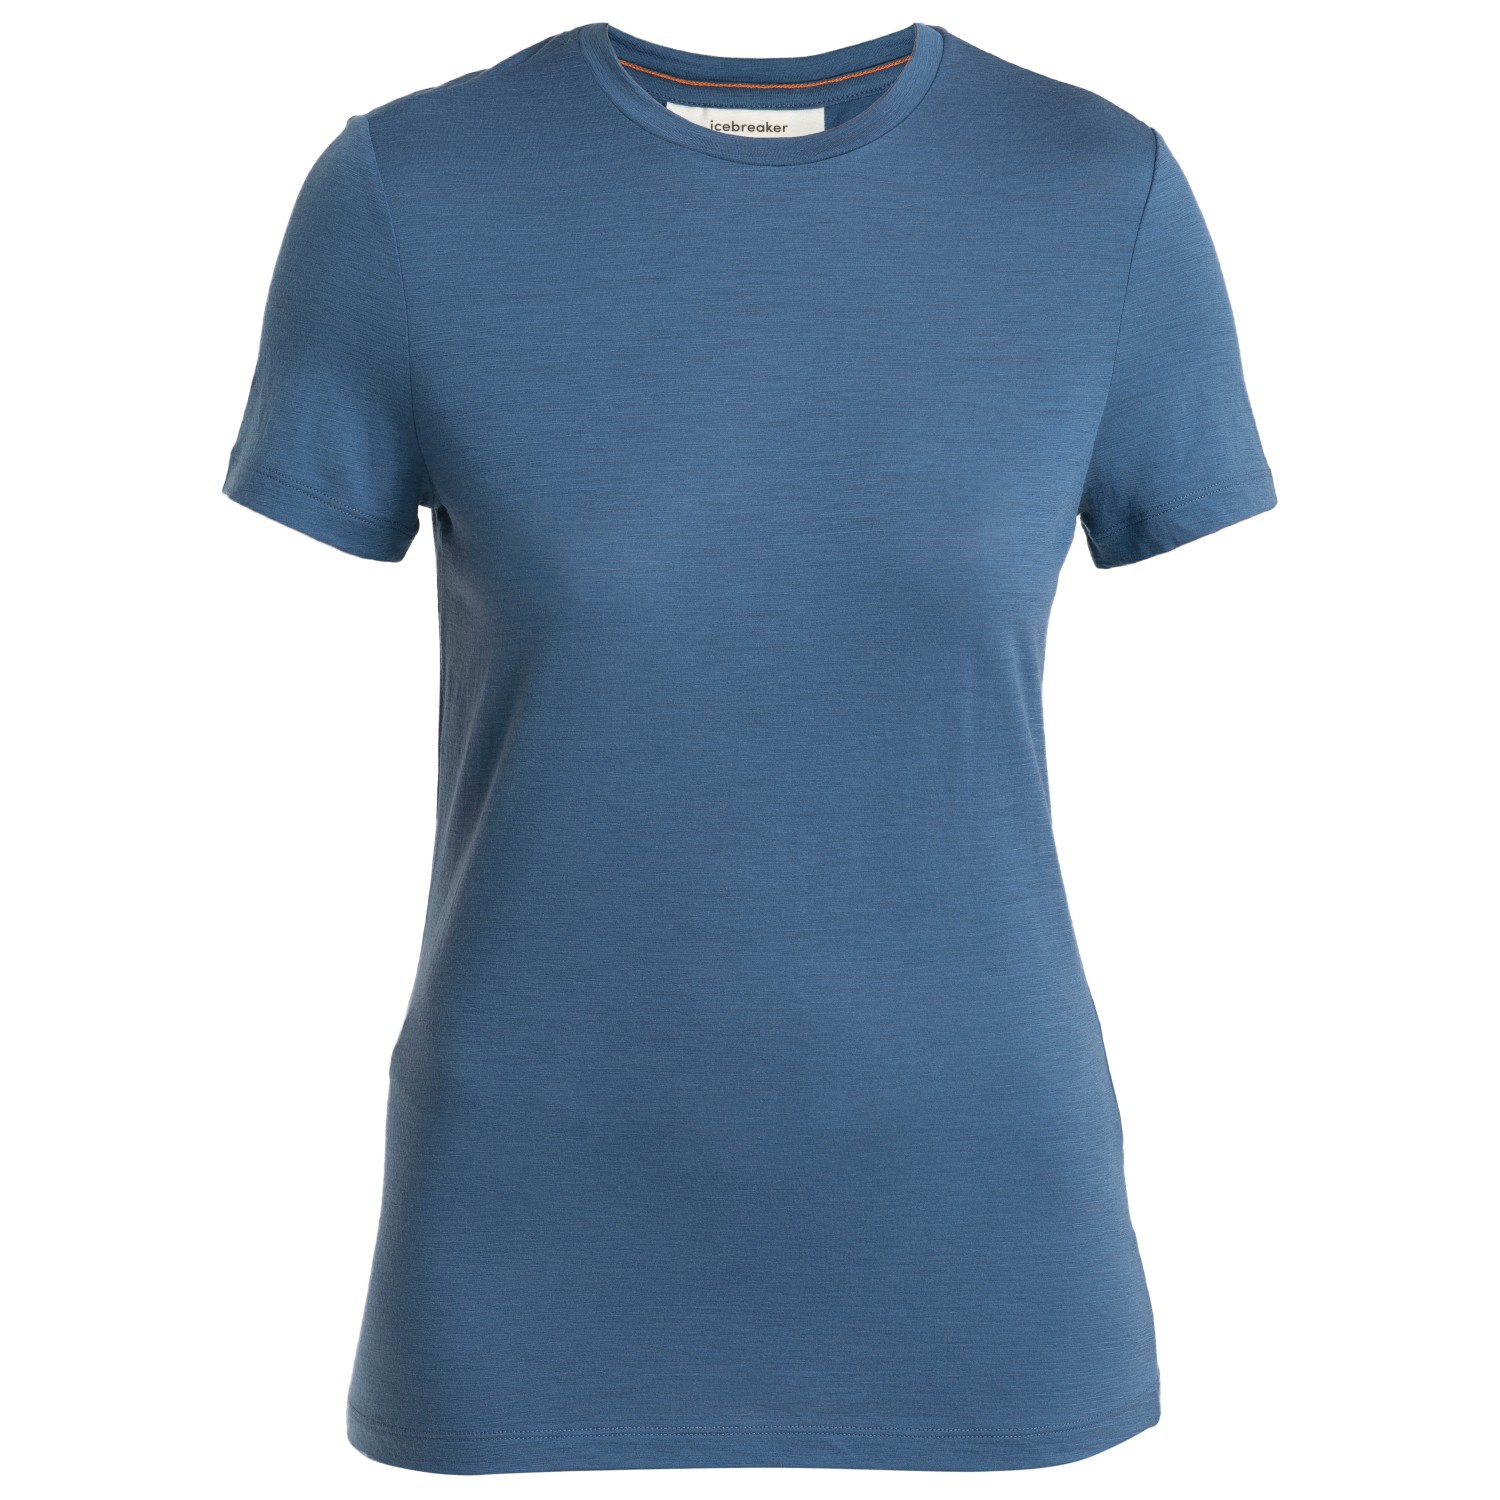 Рубашка из мериноса Icebreaker Women's Merino 150 Tech Lite III S/S Tee, цвет Dawn цена и фото